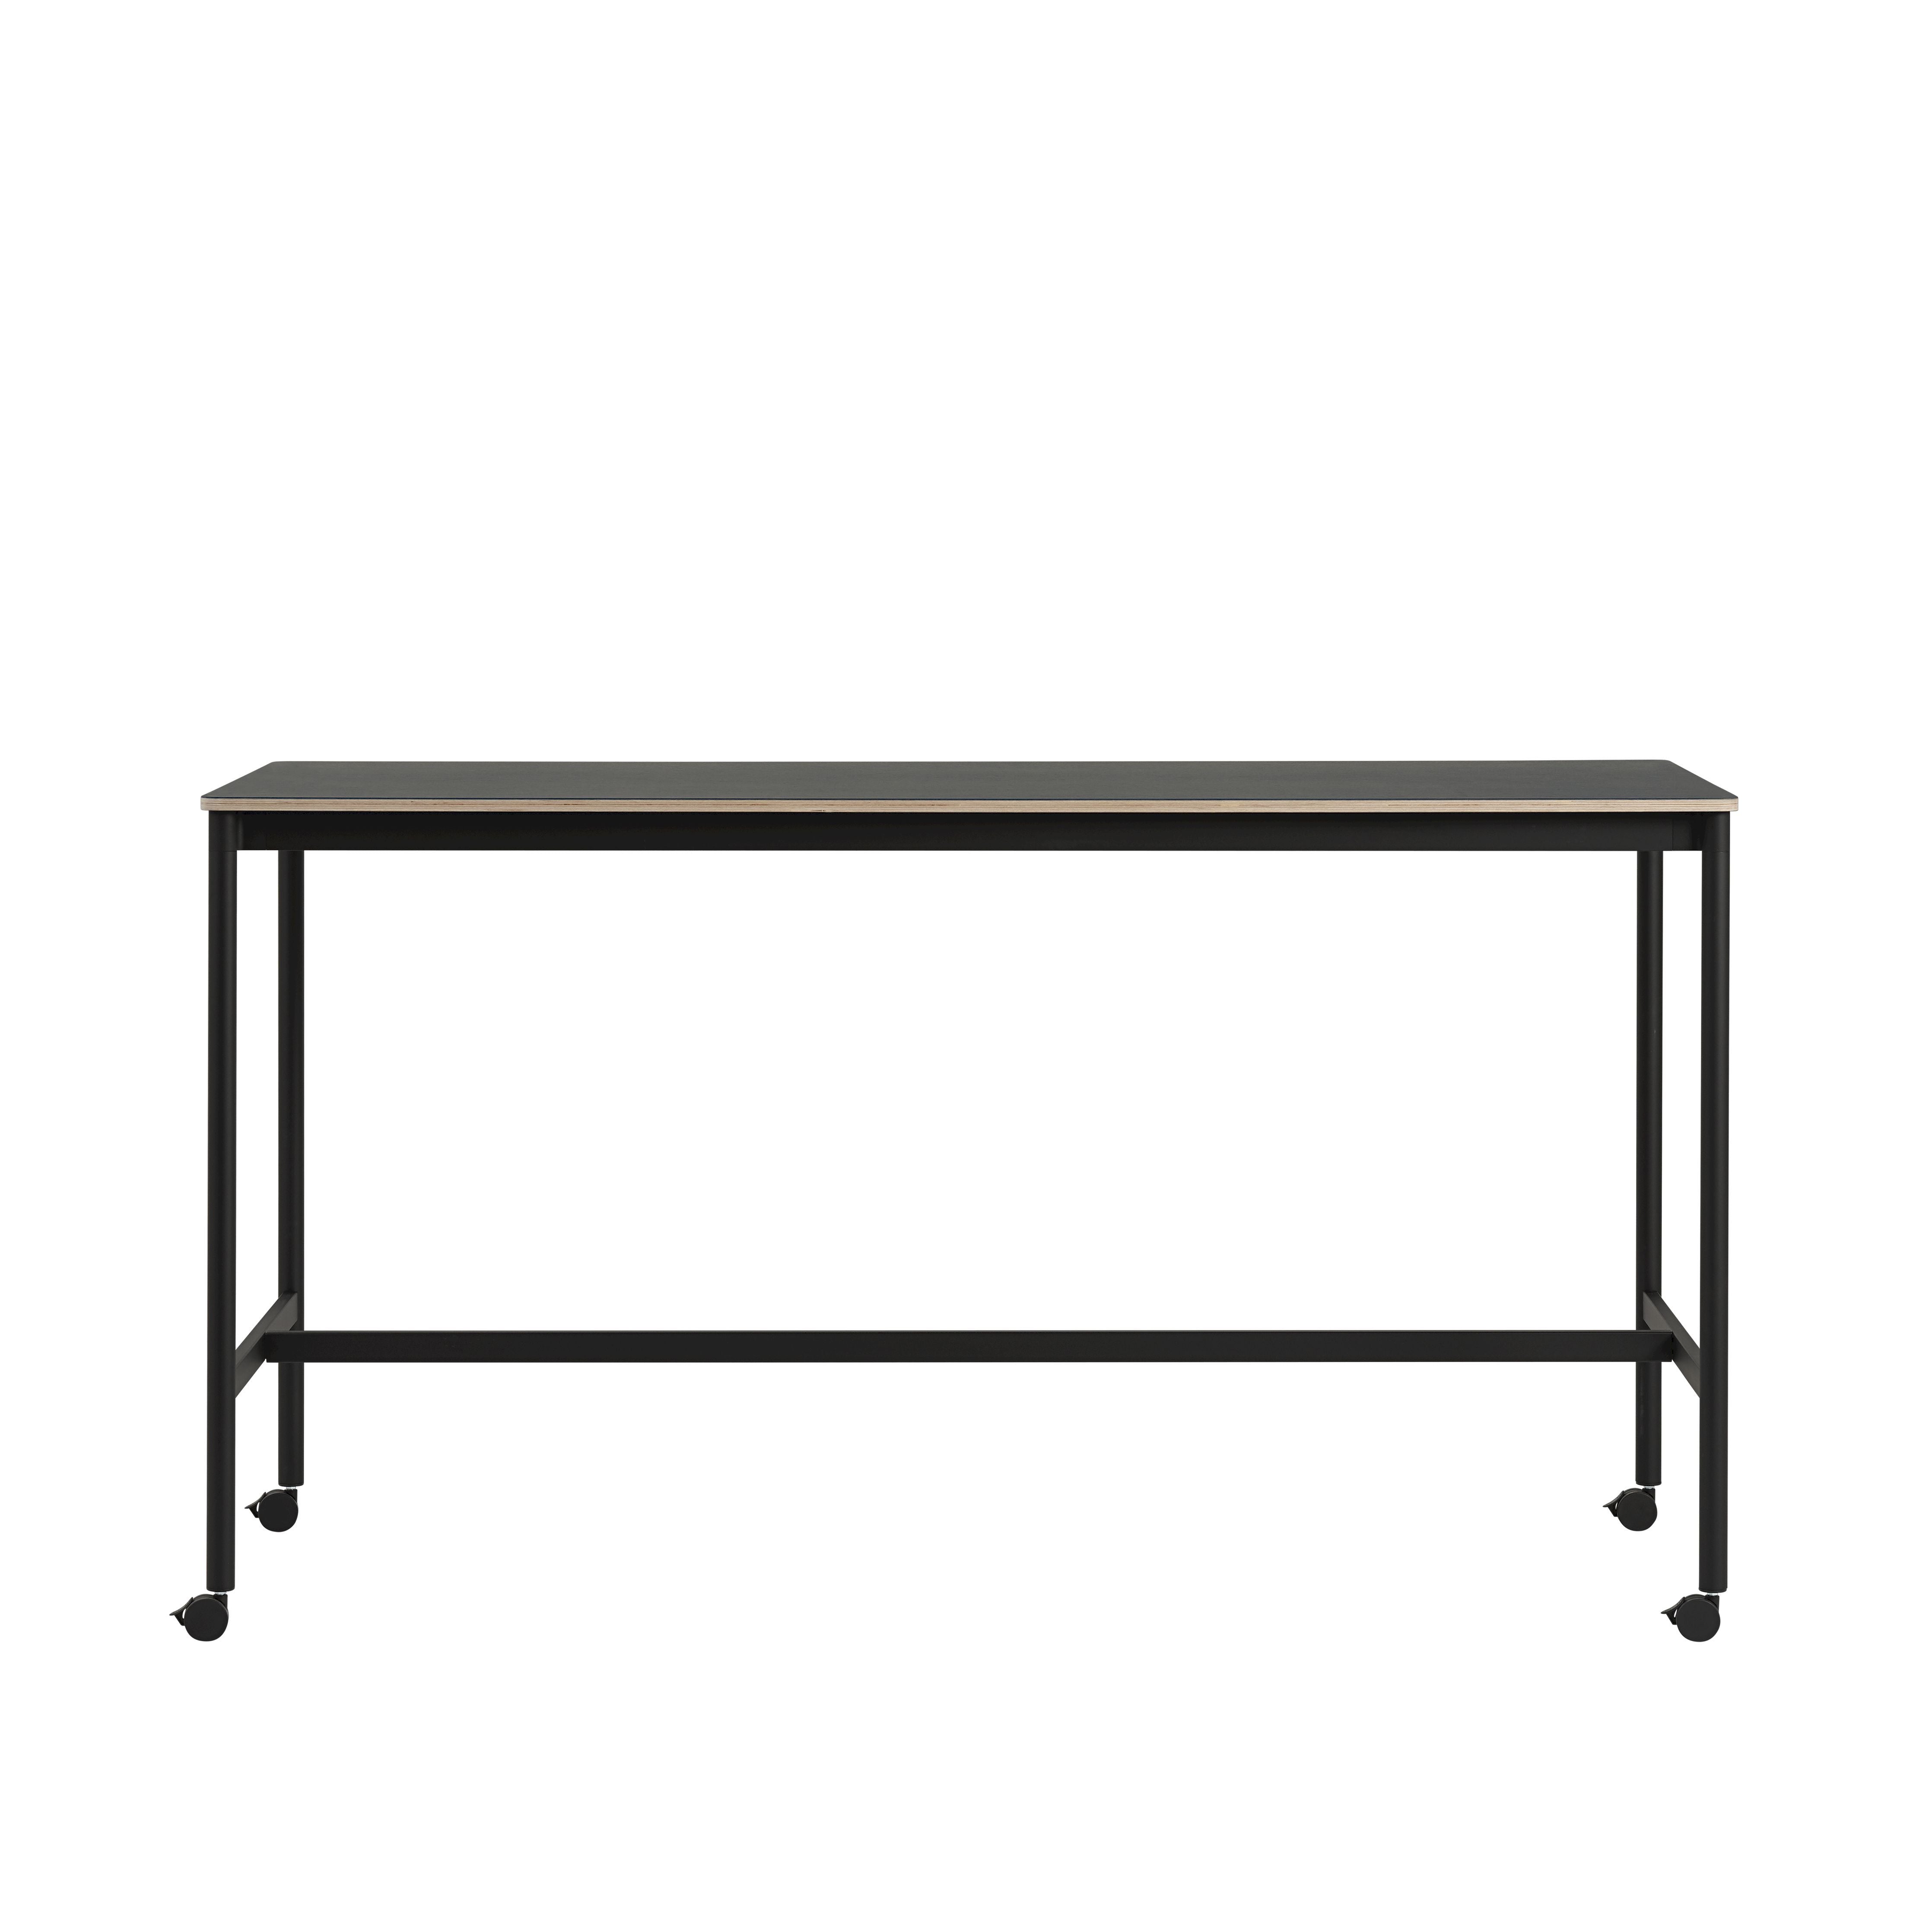 Muuto Base High Table M. Rolls 190x85x105 cm, zwart nanolaminaat/zwart multiplex